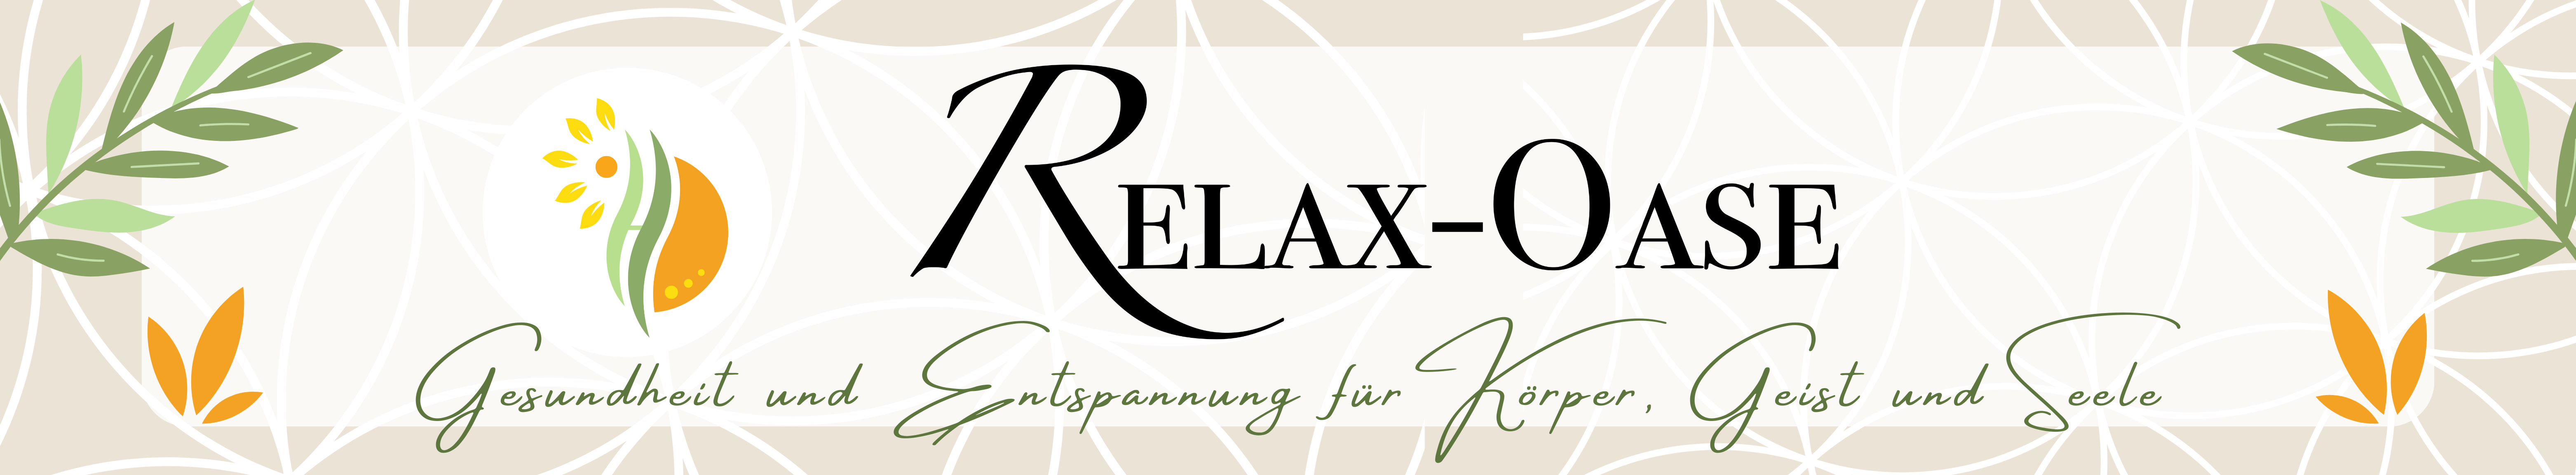 Relax-Oase Banner mit Logo, Blättern und dem Slogan "Gesundheit und Entspannung für Körper Geist und Seele"